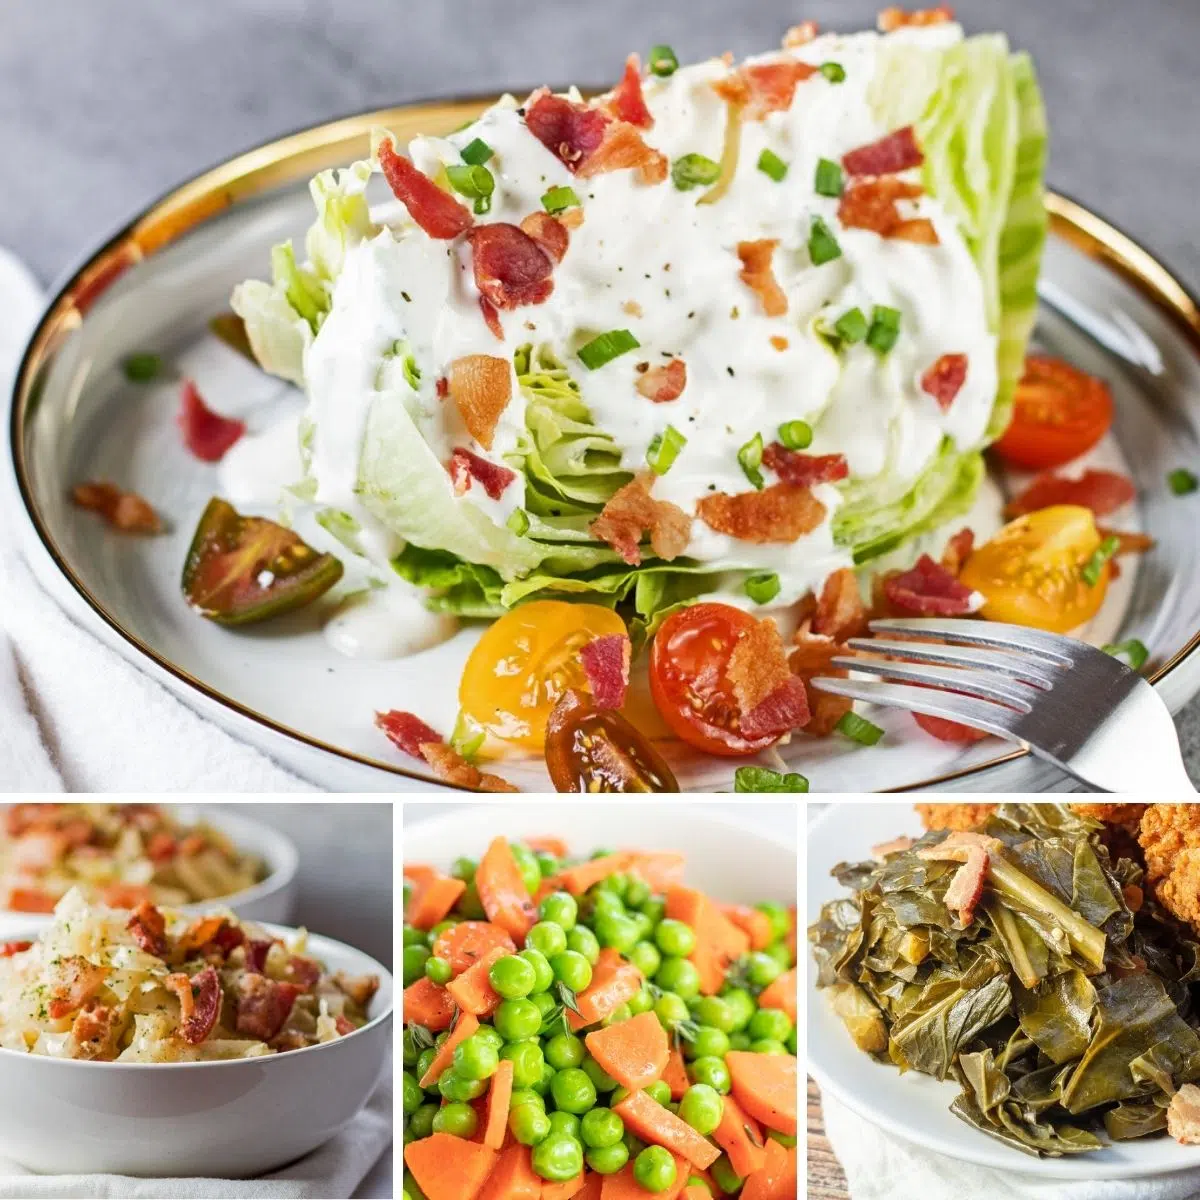 Bästa grönsakstillägg att servera till valfri måltid som visas med dessa 4 utvalda recept i en collagebild.